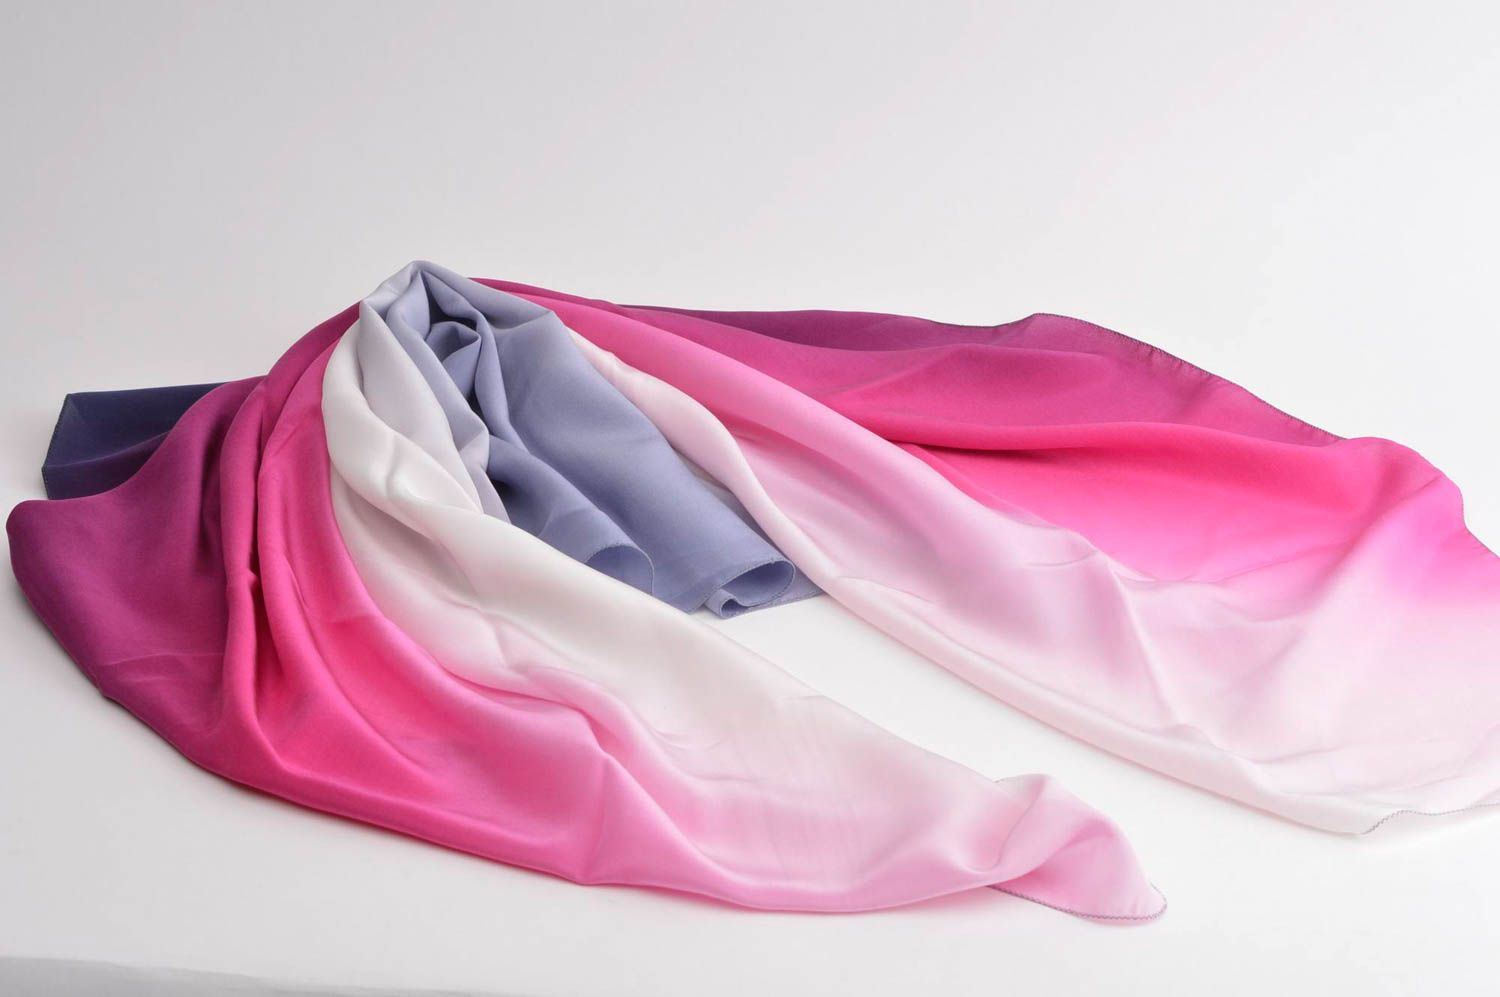 Платок ручной работы платок из шелка женский аксессуар розовый расписной фото 3